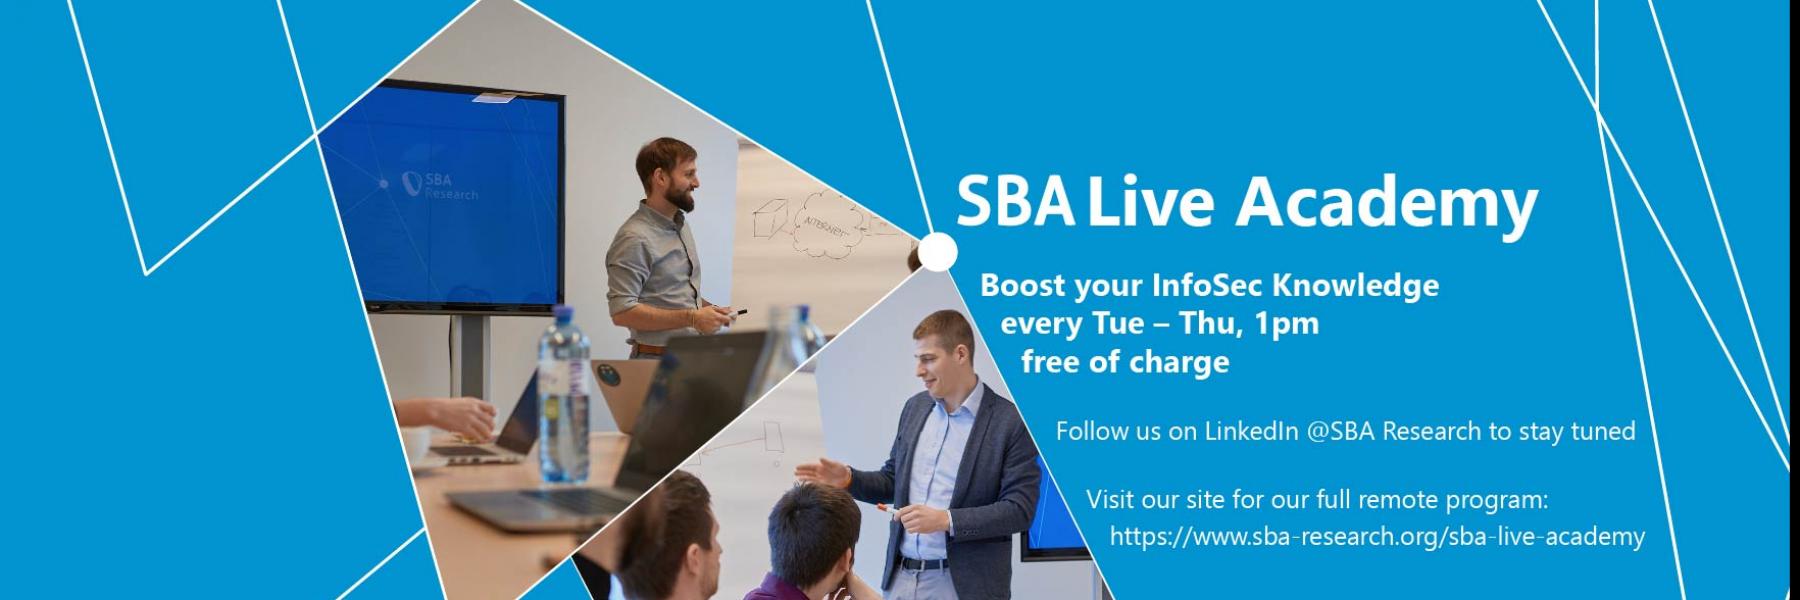 Einladung zur SBA Live Academy